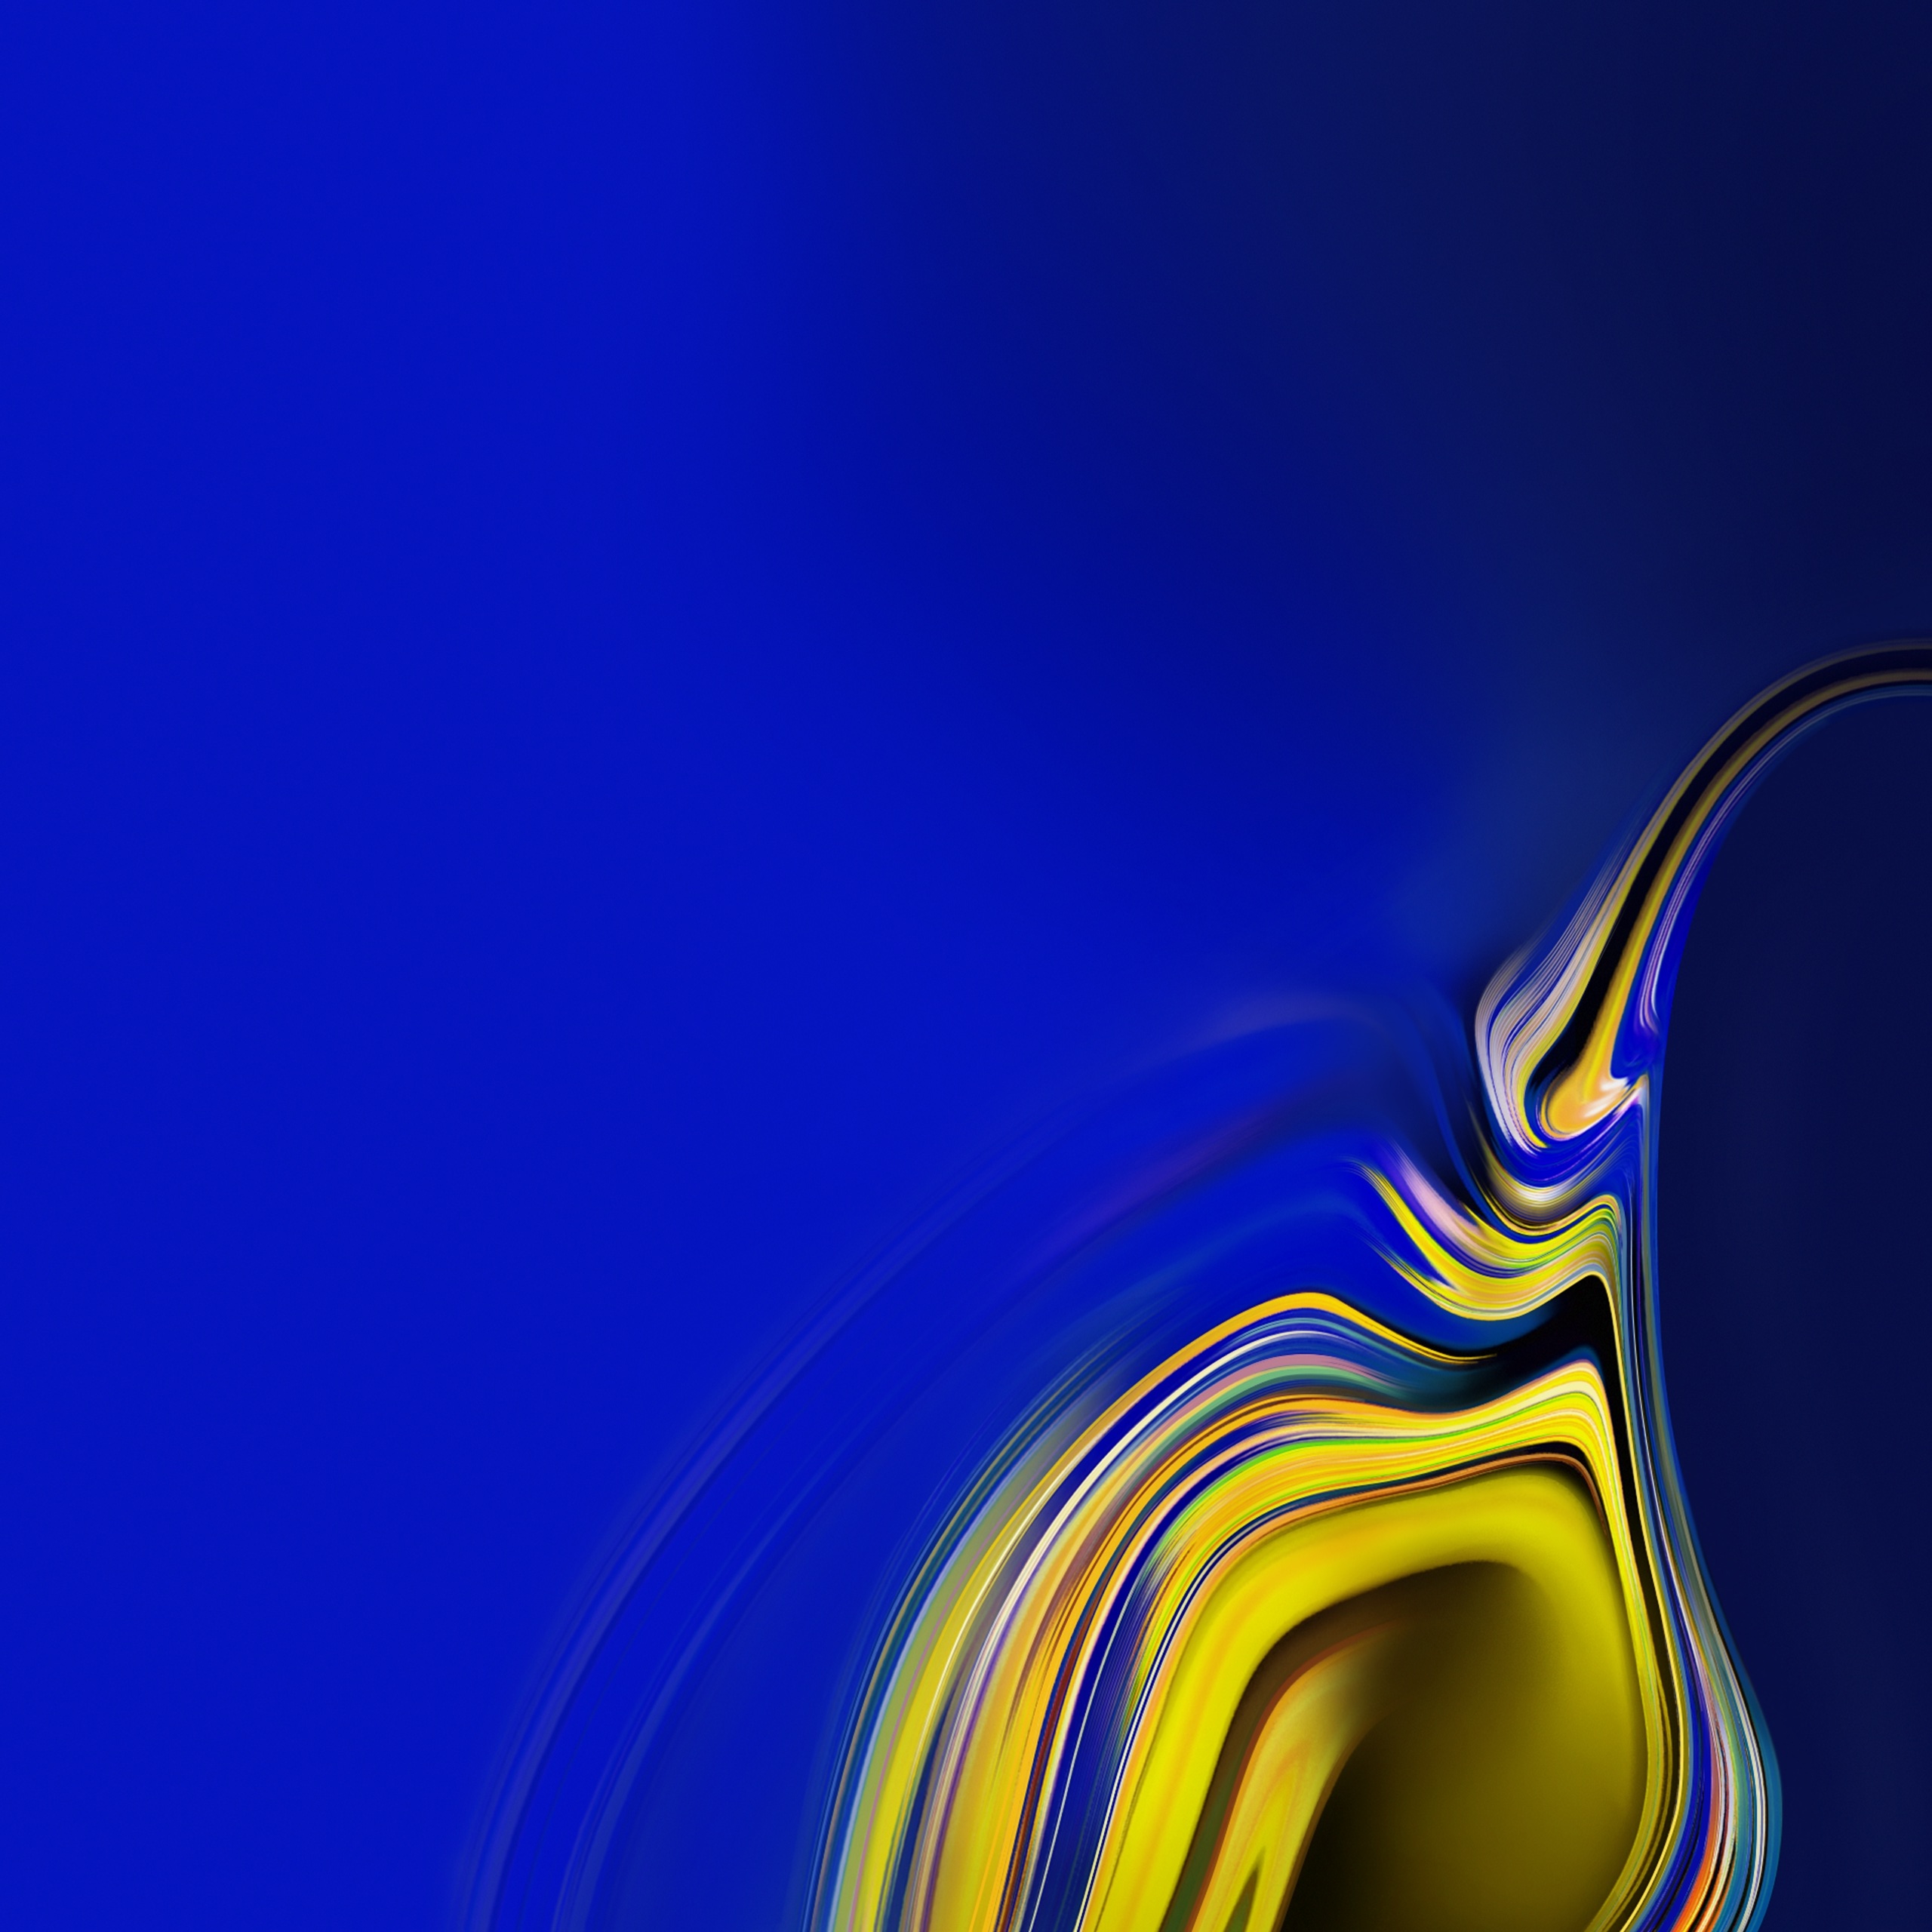 サムスン銀河の壁紙,青い,コバルトブルー,黄,水,エレクトリックブルー